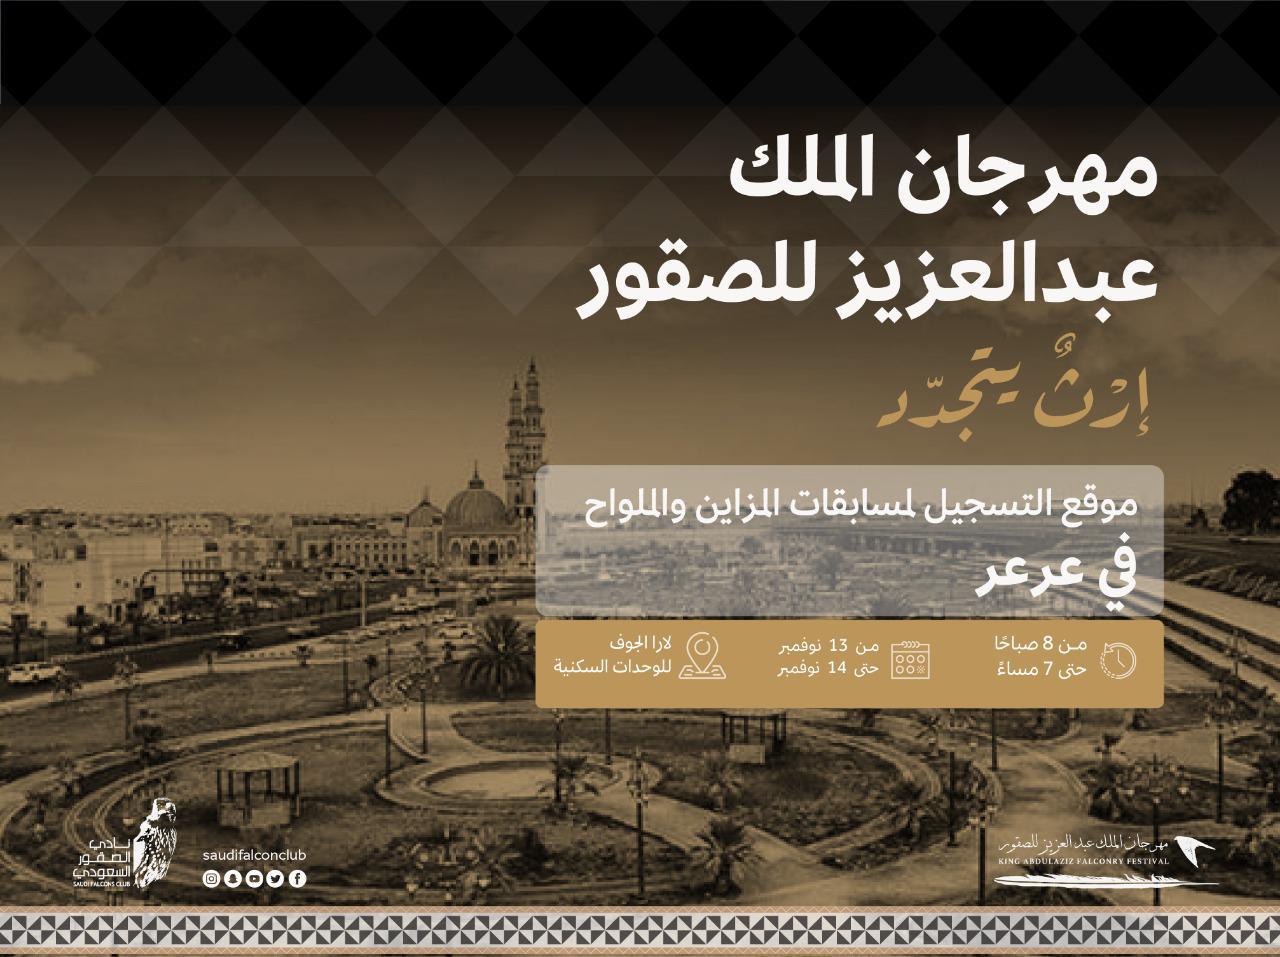 مهرجان الملك عبد العزيز الثاني للصقور يستقبل المتقدمين لمسابقات في عرعر